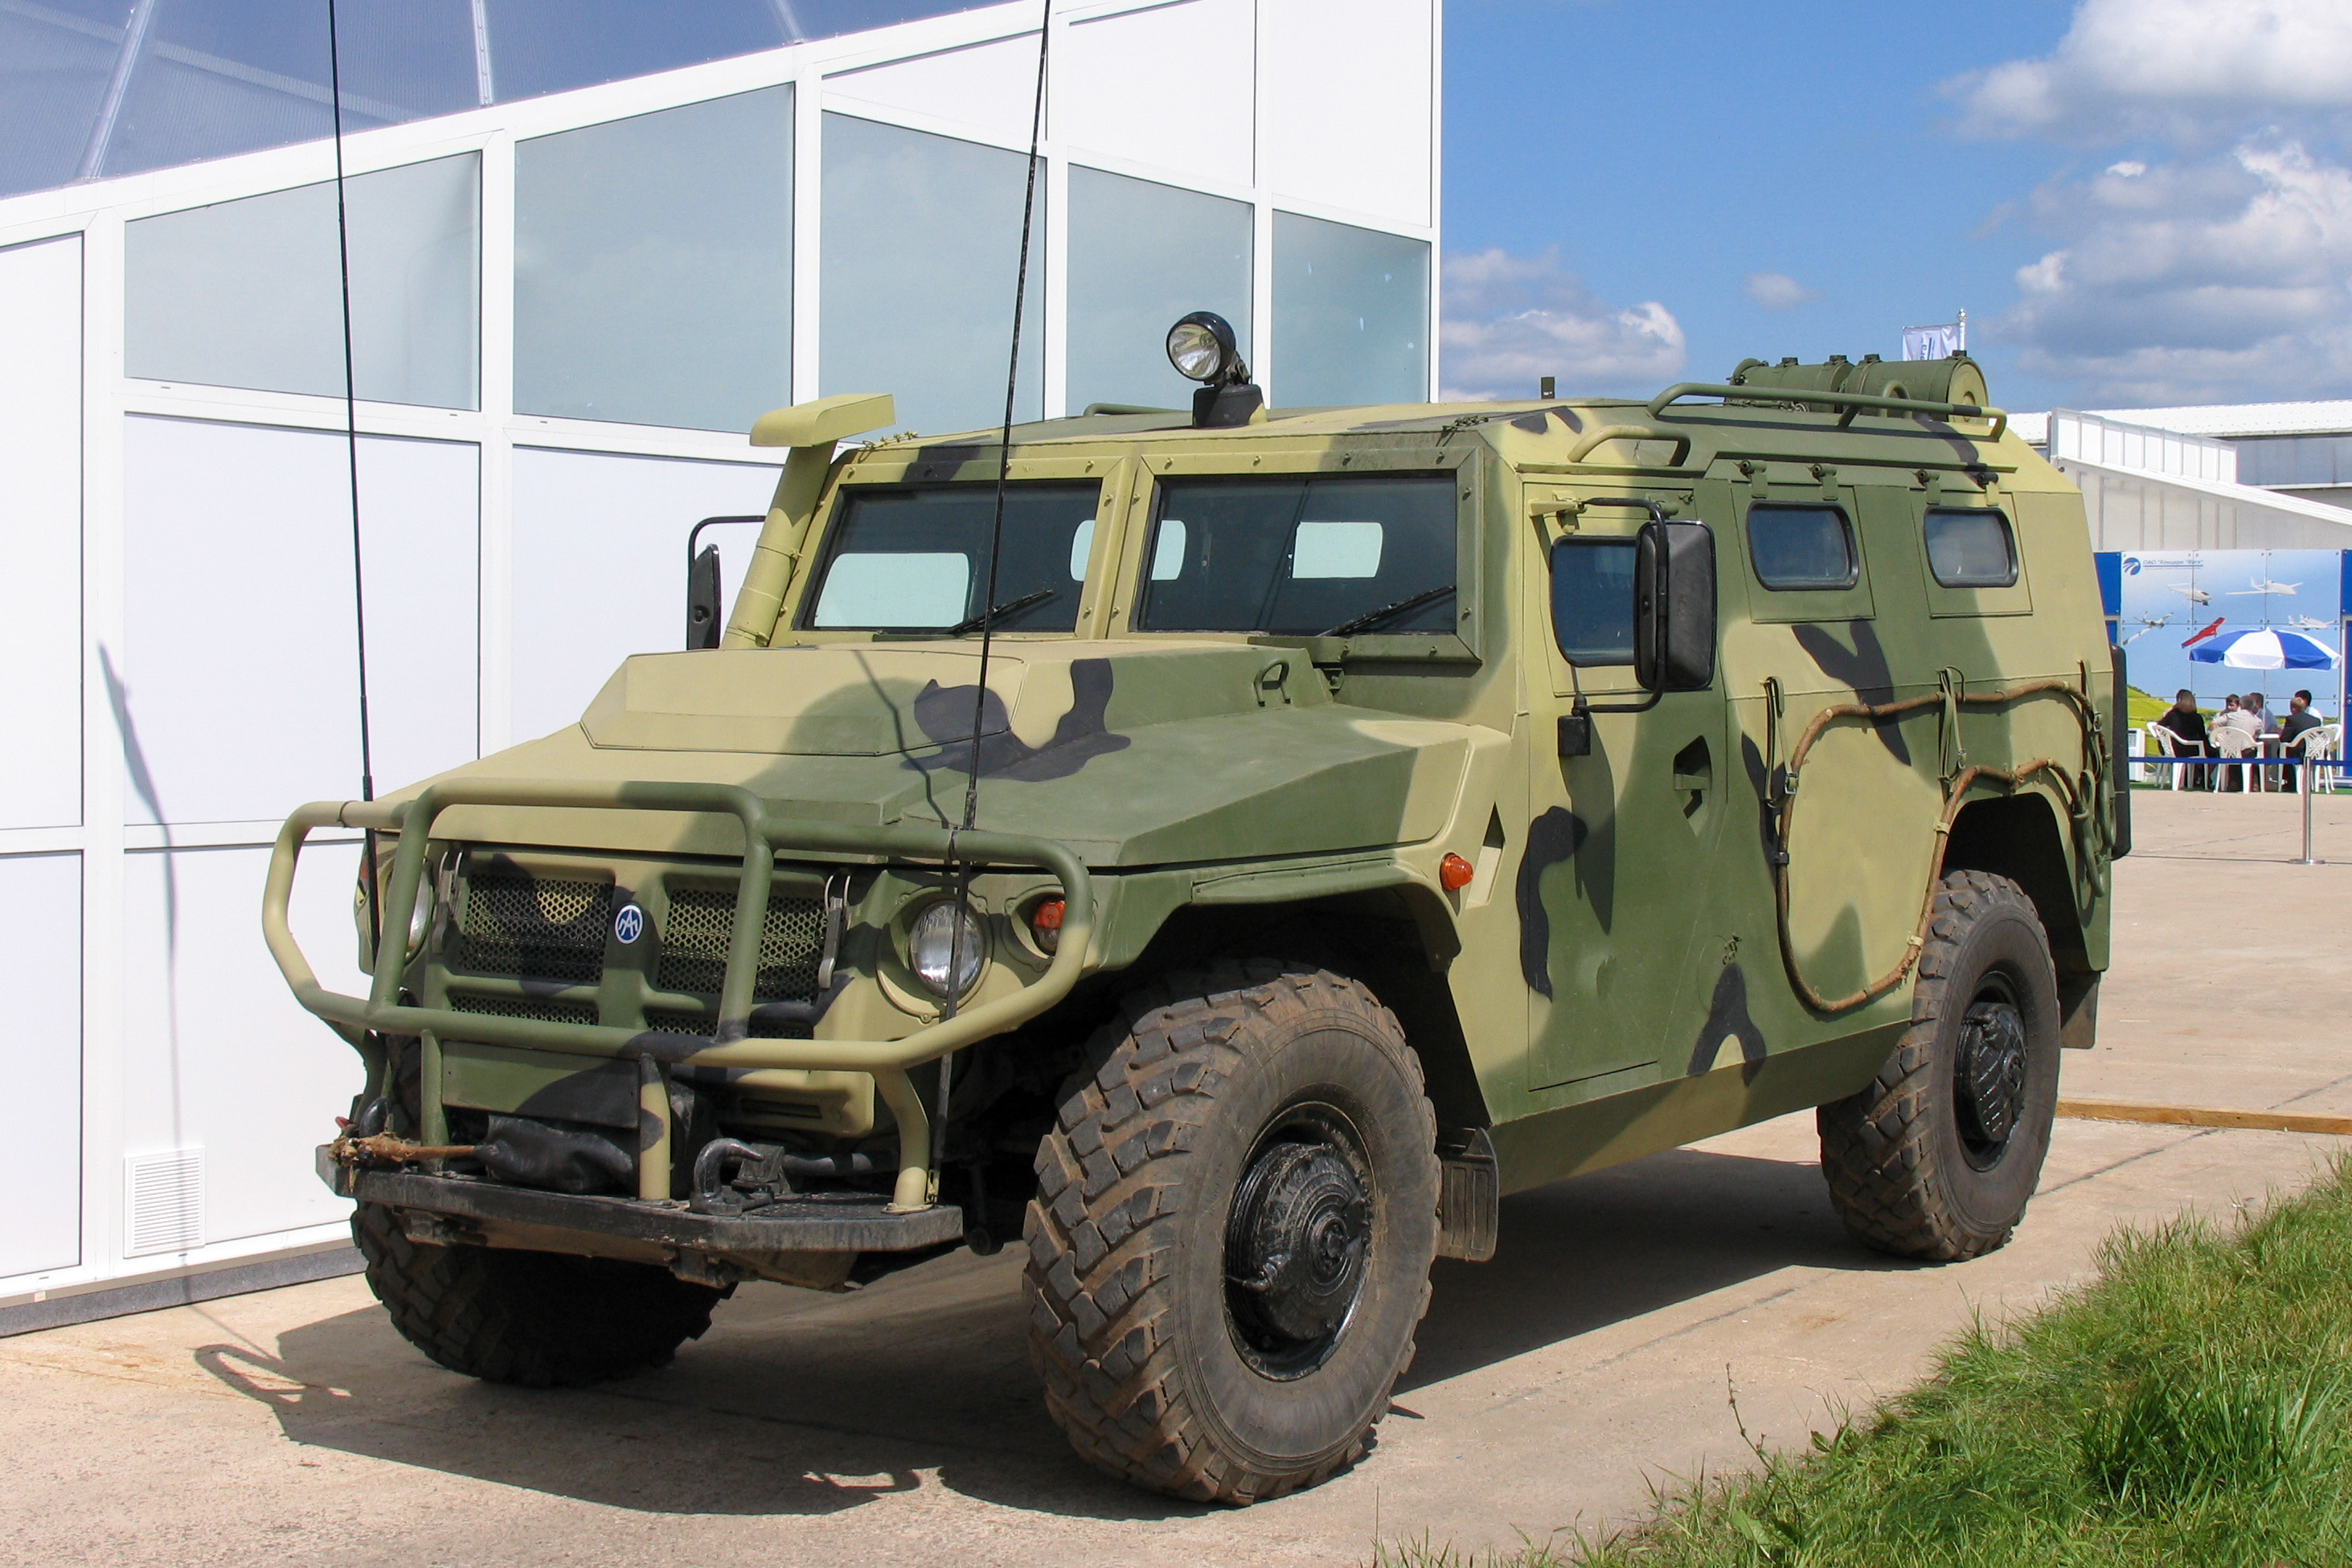 Українські військові захопили російський бронеавтомобіль «Тигр-М» з кулеметом "Корд" та гранатометом АГС-17